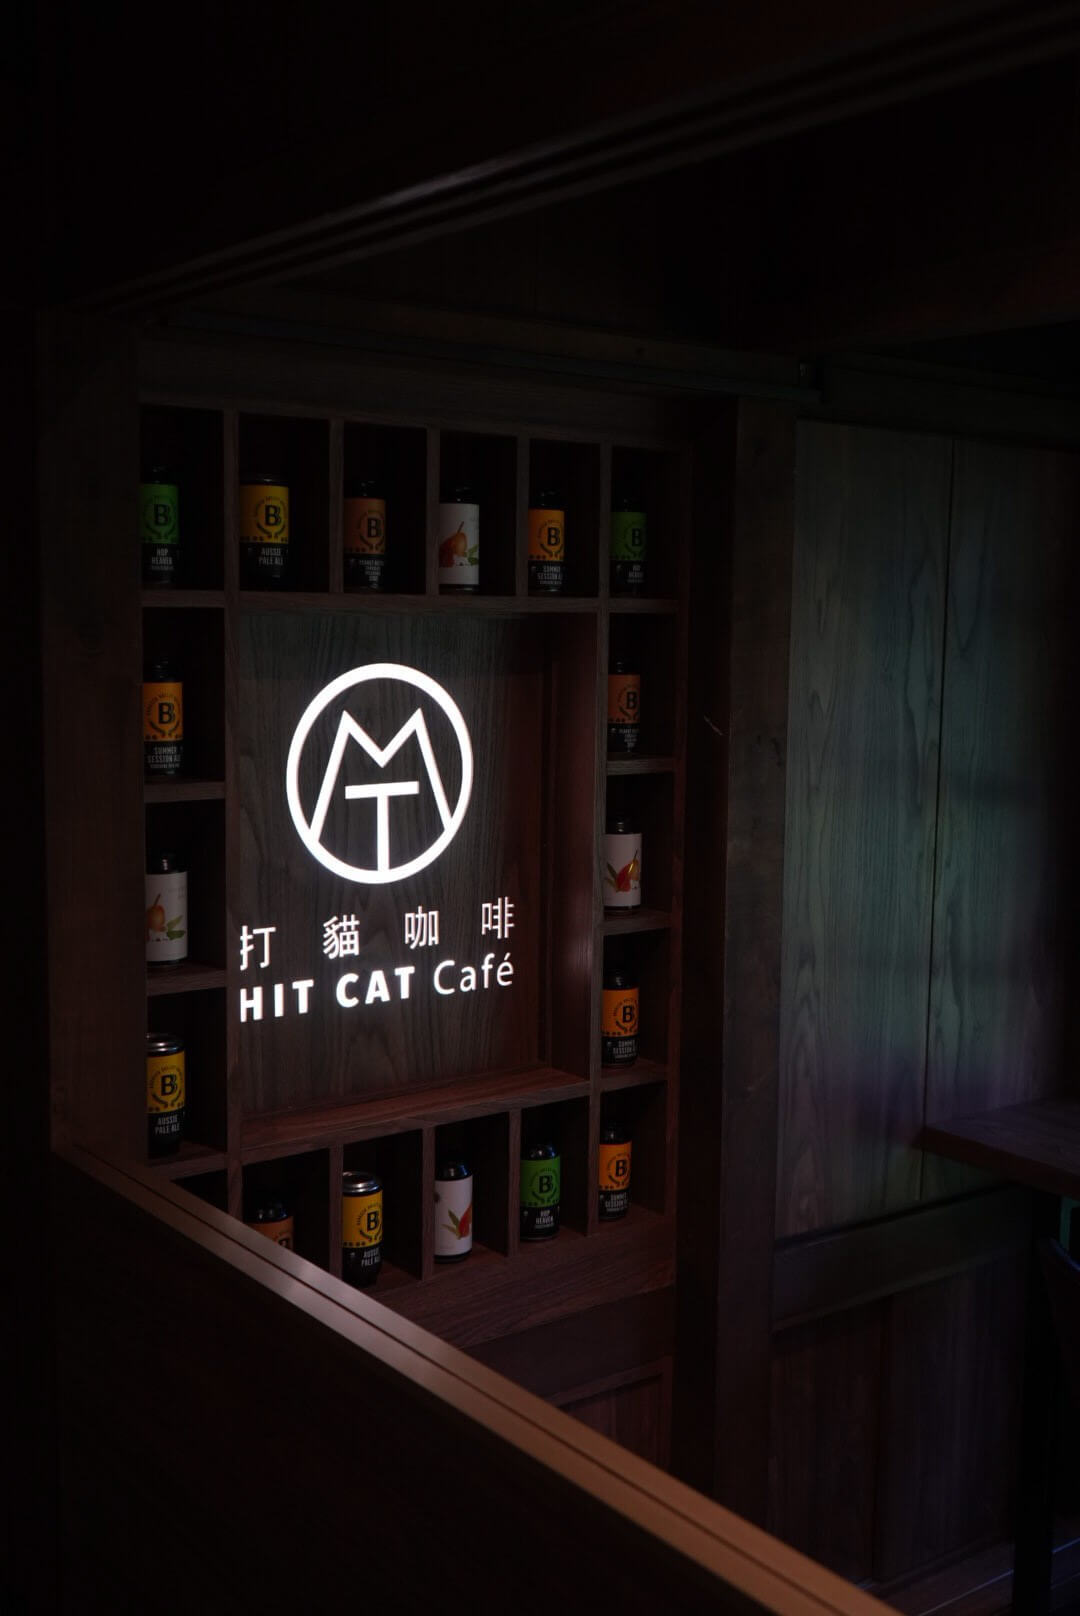 嘉義新開幕【打貓咖啡 Hit Cat Café 】檜意森活村裡的咖啡館